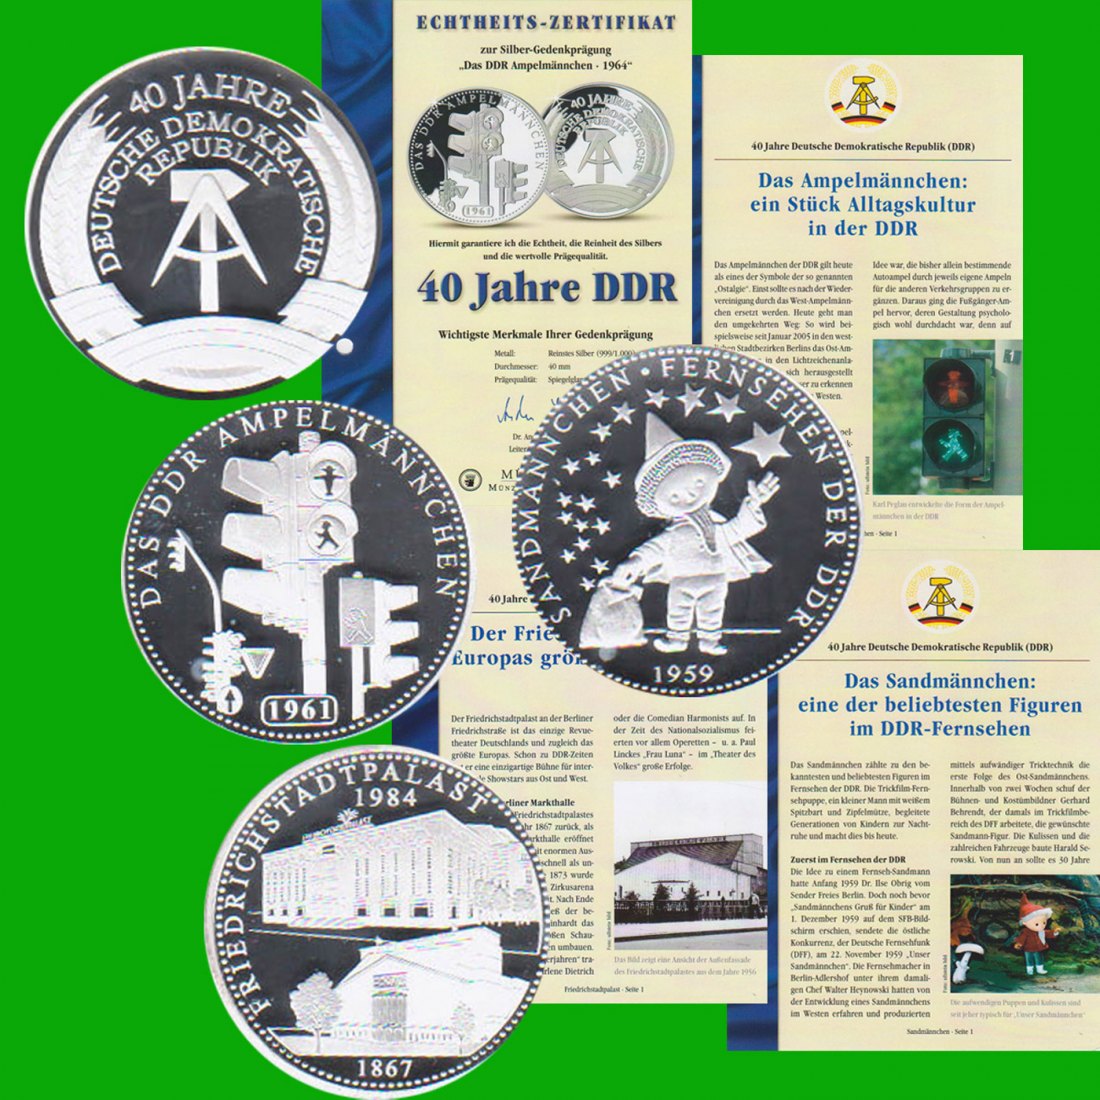  3 Silbermedaillen *40 Jahre DDR - das Sandmännchen* 1991 *PP* 2oz Silber Münze Berlin   